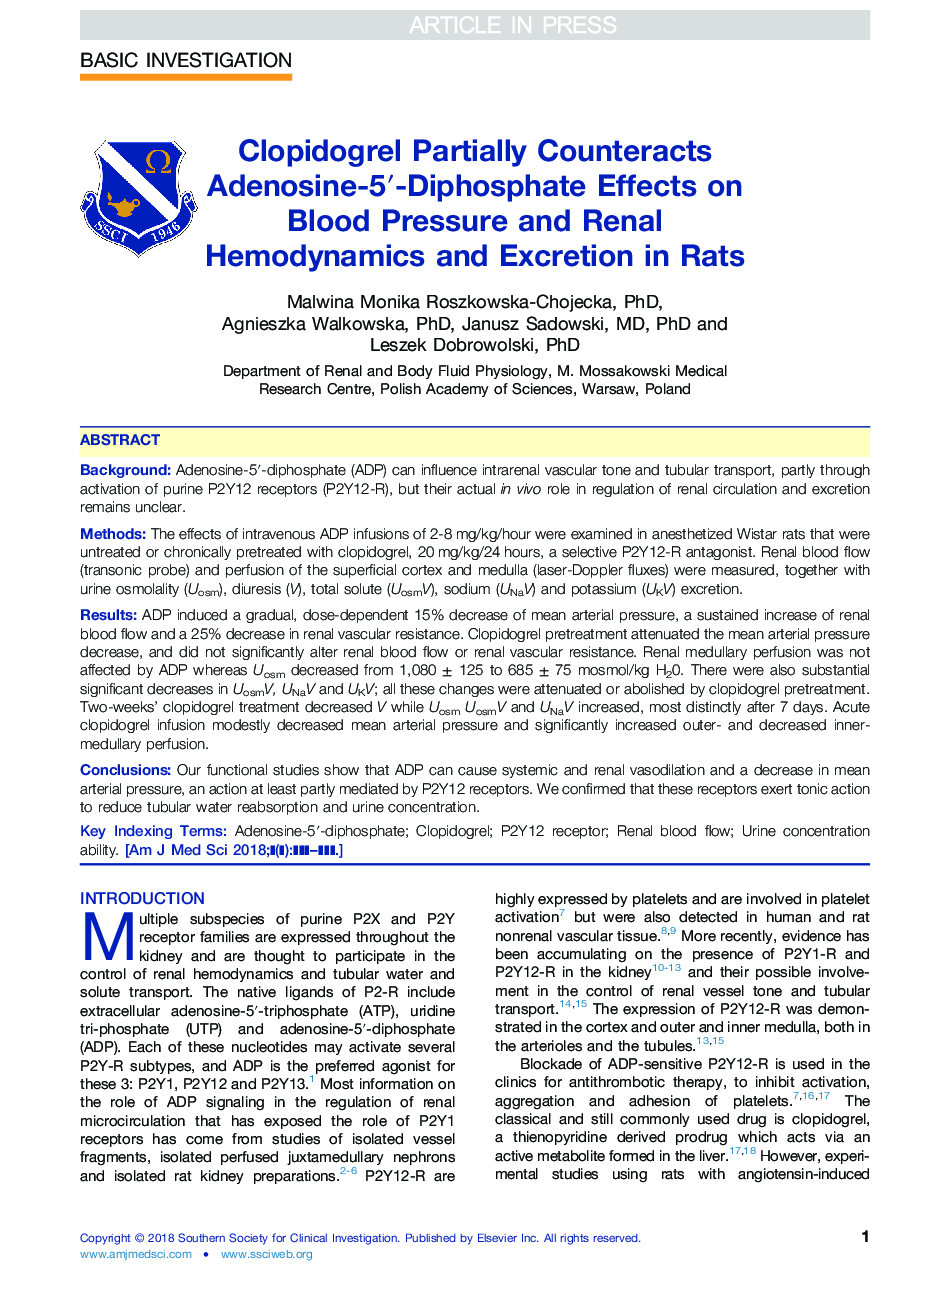 Clopidogrel Partially Counteracts Adenosine-5â²-Diphosphate Effects on Blood Pressure and Renal Hemodynamics and Excretion in Rats